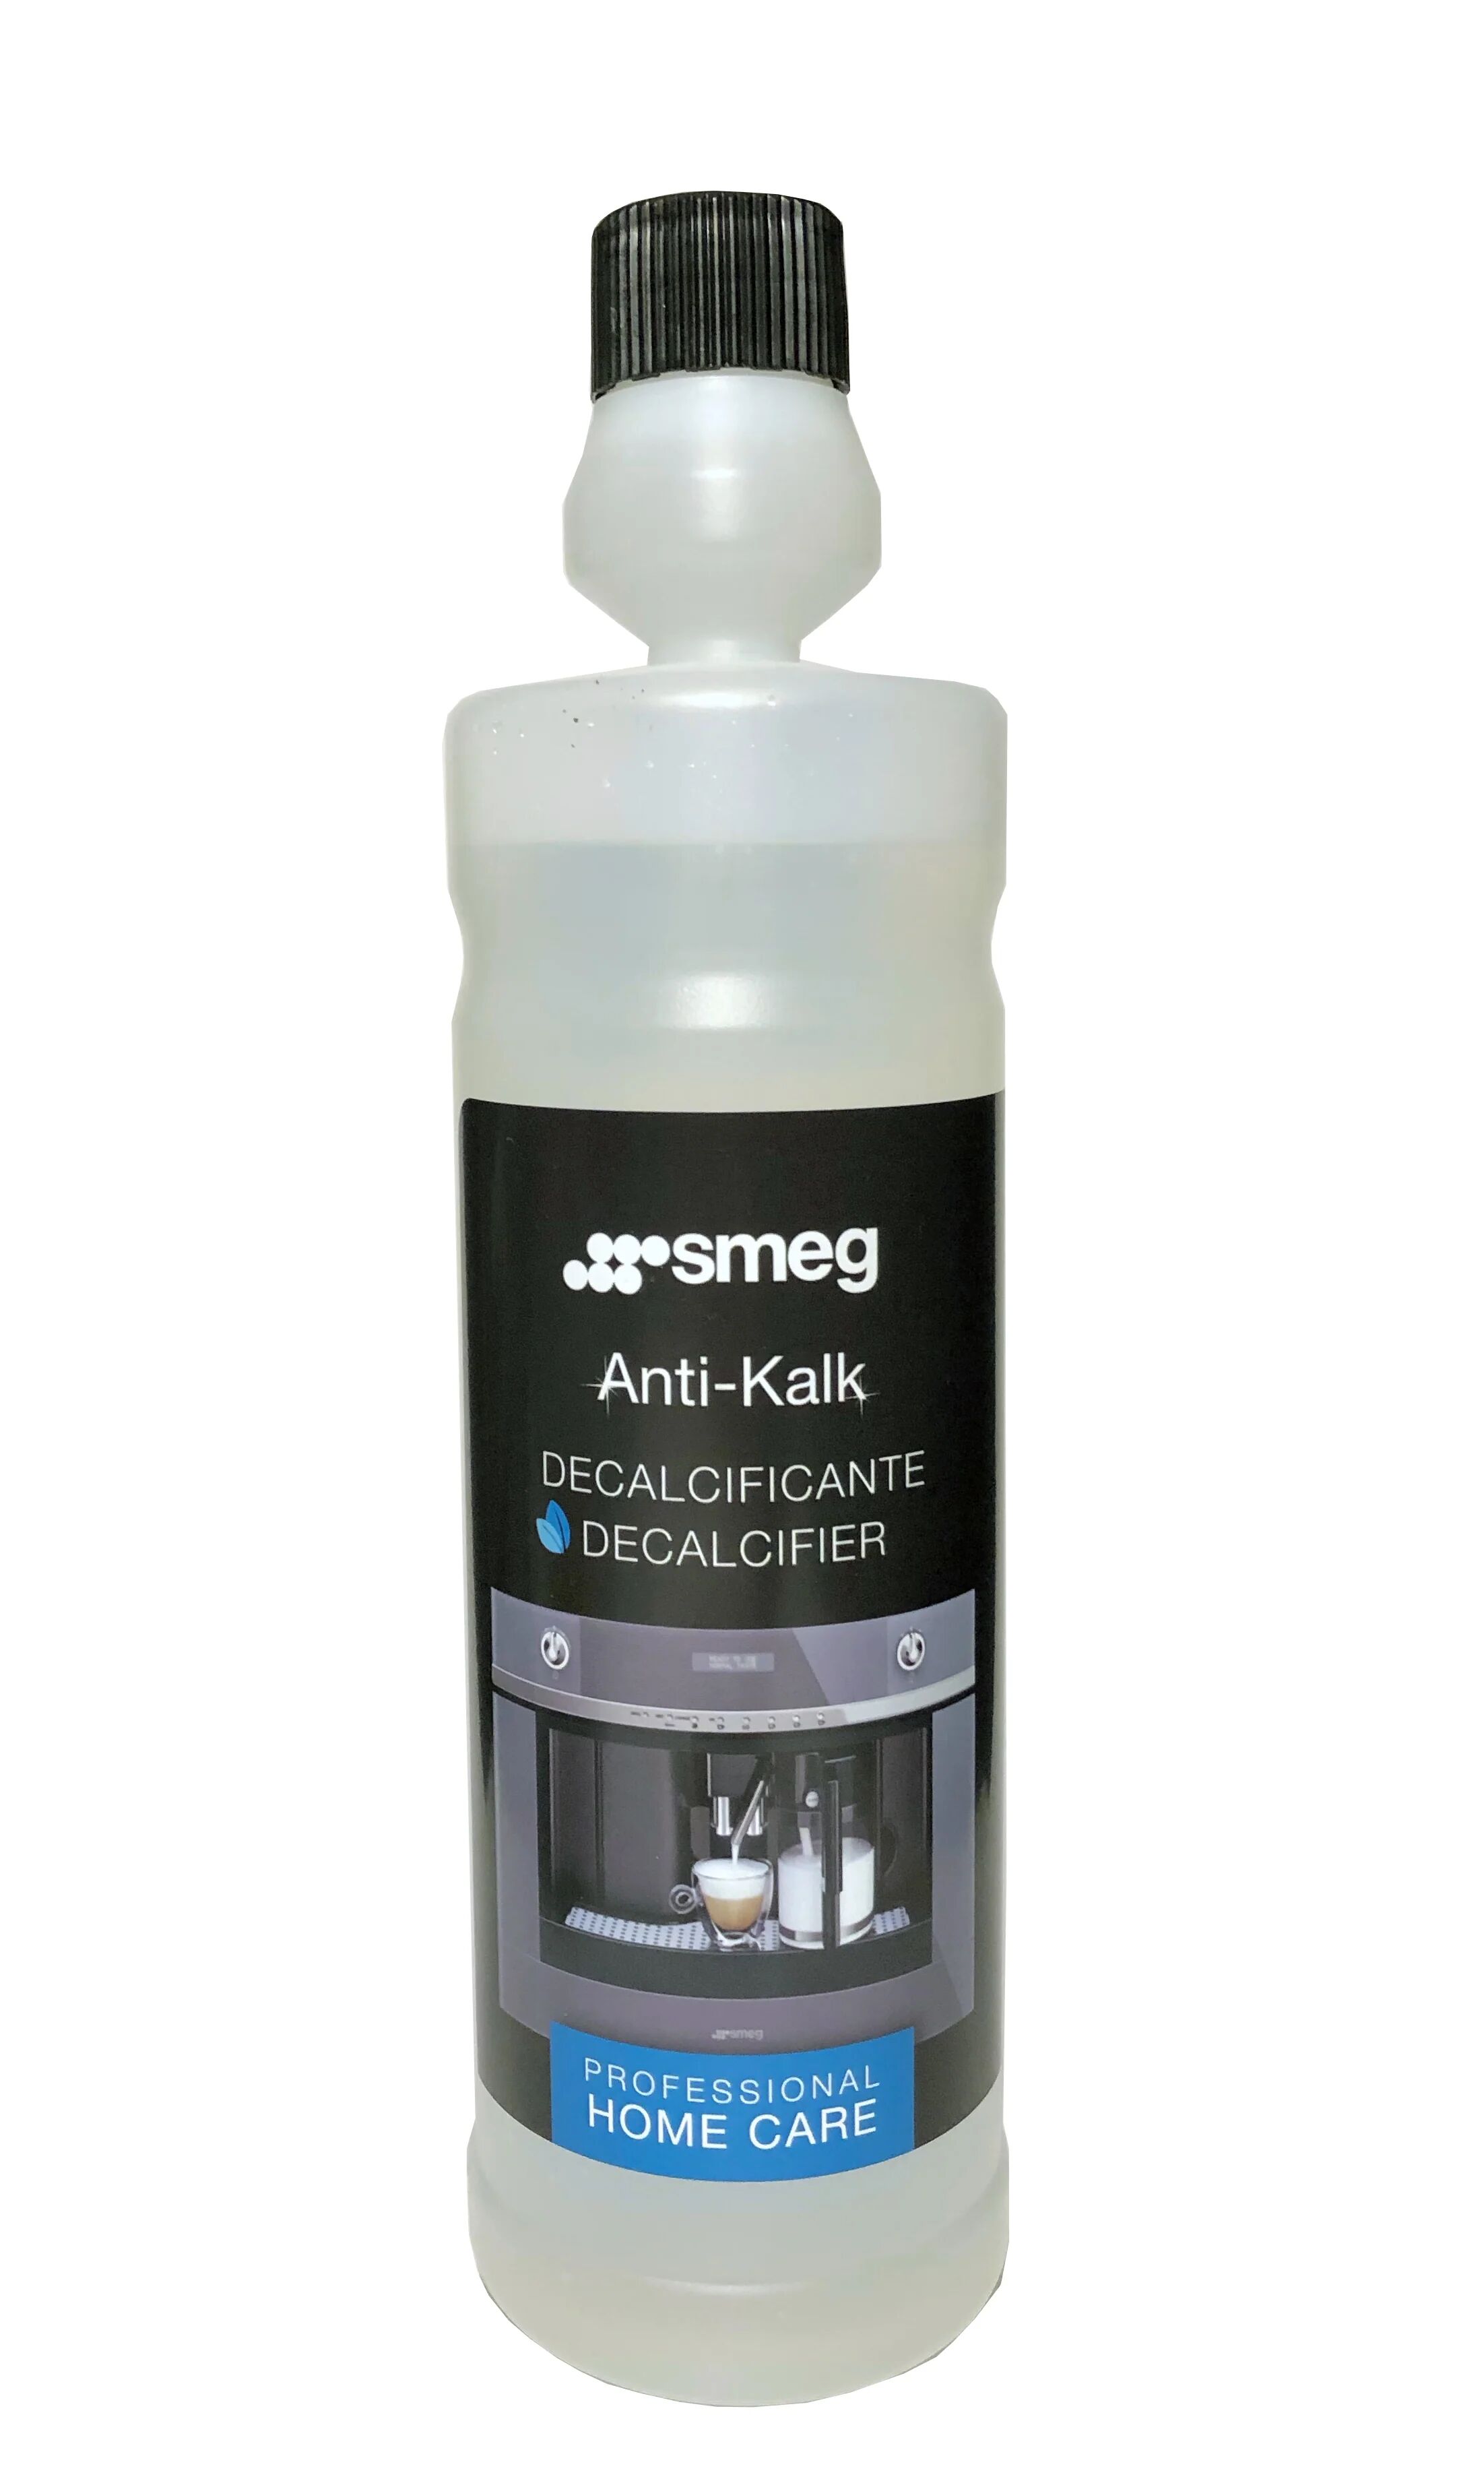 Ⓜ️🔵🔵🔵👌 Smeg Home Care ANTI-KALK 25 lavaggi - Decalcificante anticalcare naturale per